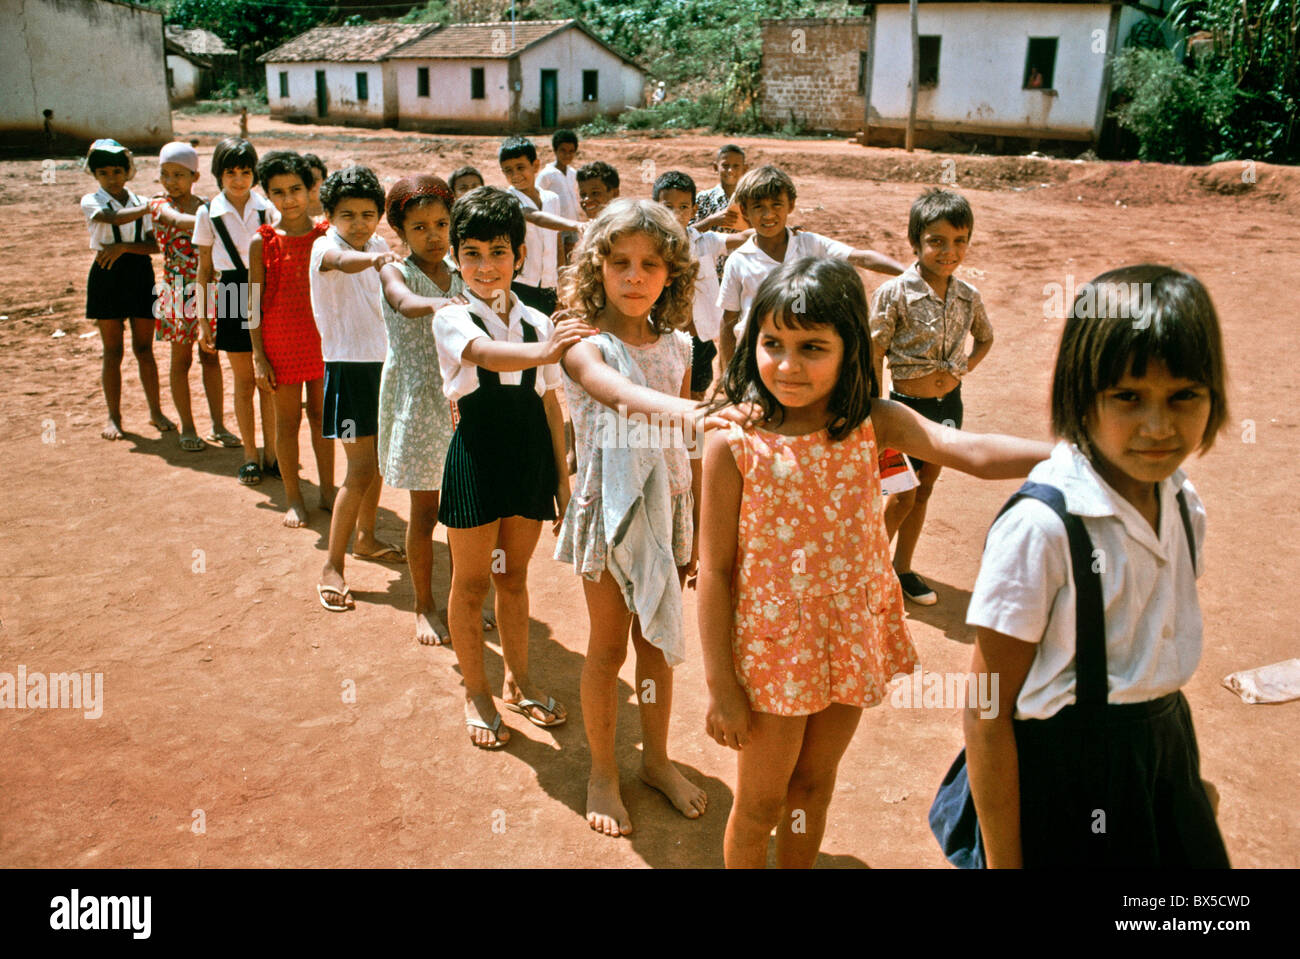 La ligne jusqu'à la récréation des élèves dans un village rural dans la province de Bahia au Brésil. Remarque sur les uniformes des élèves. Banque D'Images